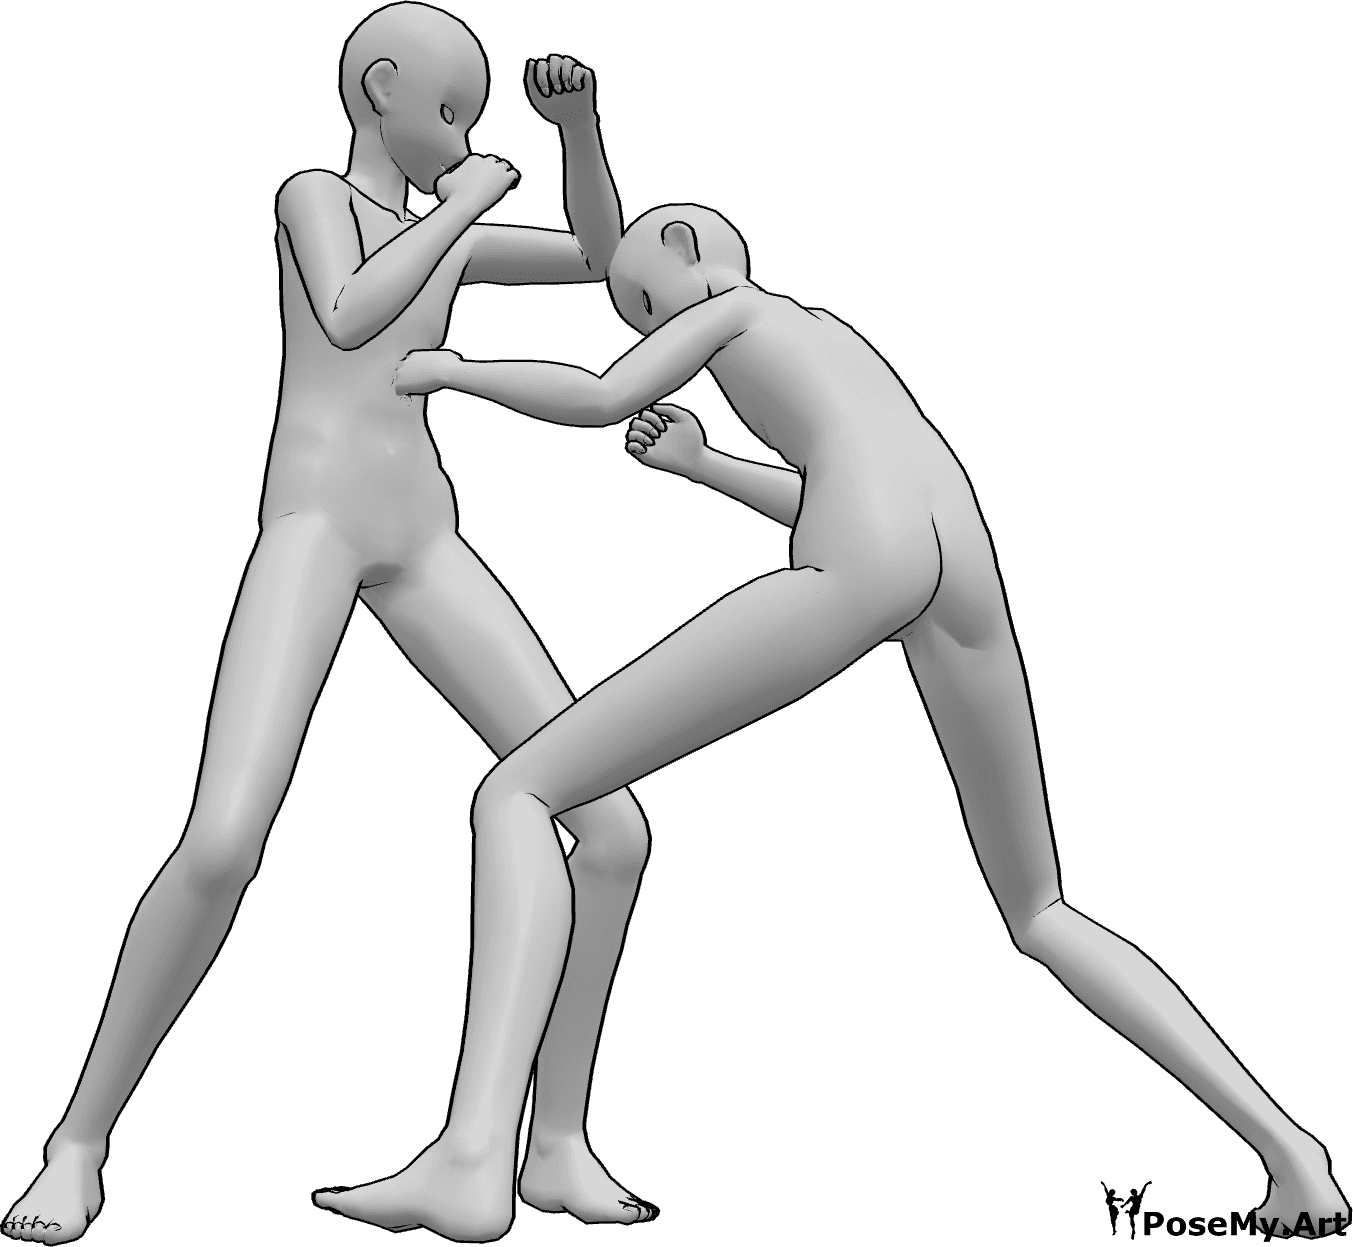 Referência de poses- Pose de luta masculina de anime - Dois homens de anime estão a lutar, a dar murros, a bater um no outro, pose de batalha de anime